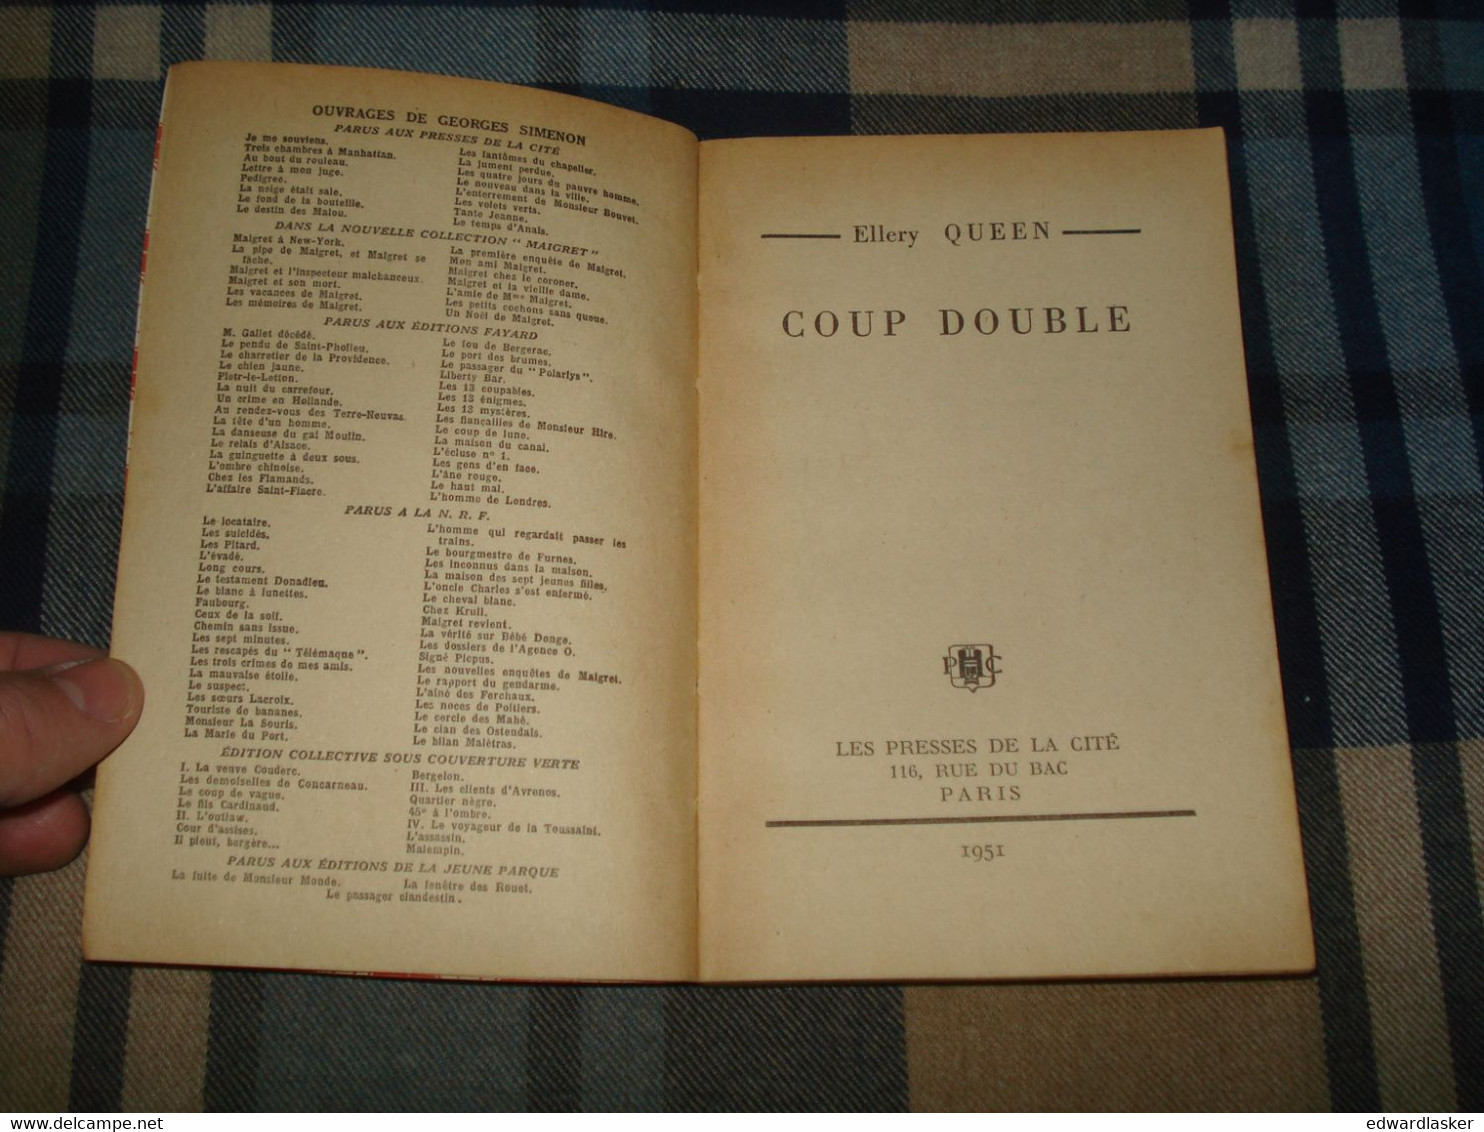 Un MYSTERE N°51 : COUP DOUBLE /Ellery QUEEN - Avril 1951 - Presses De La Cité